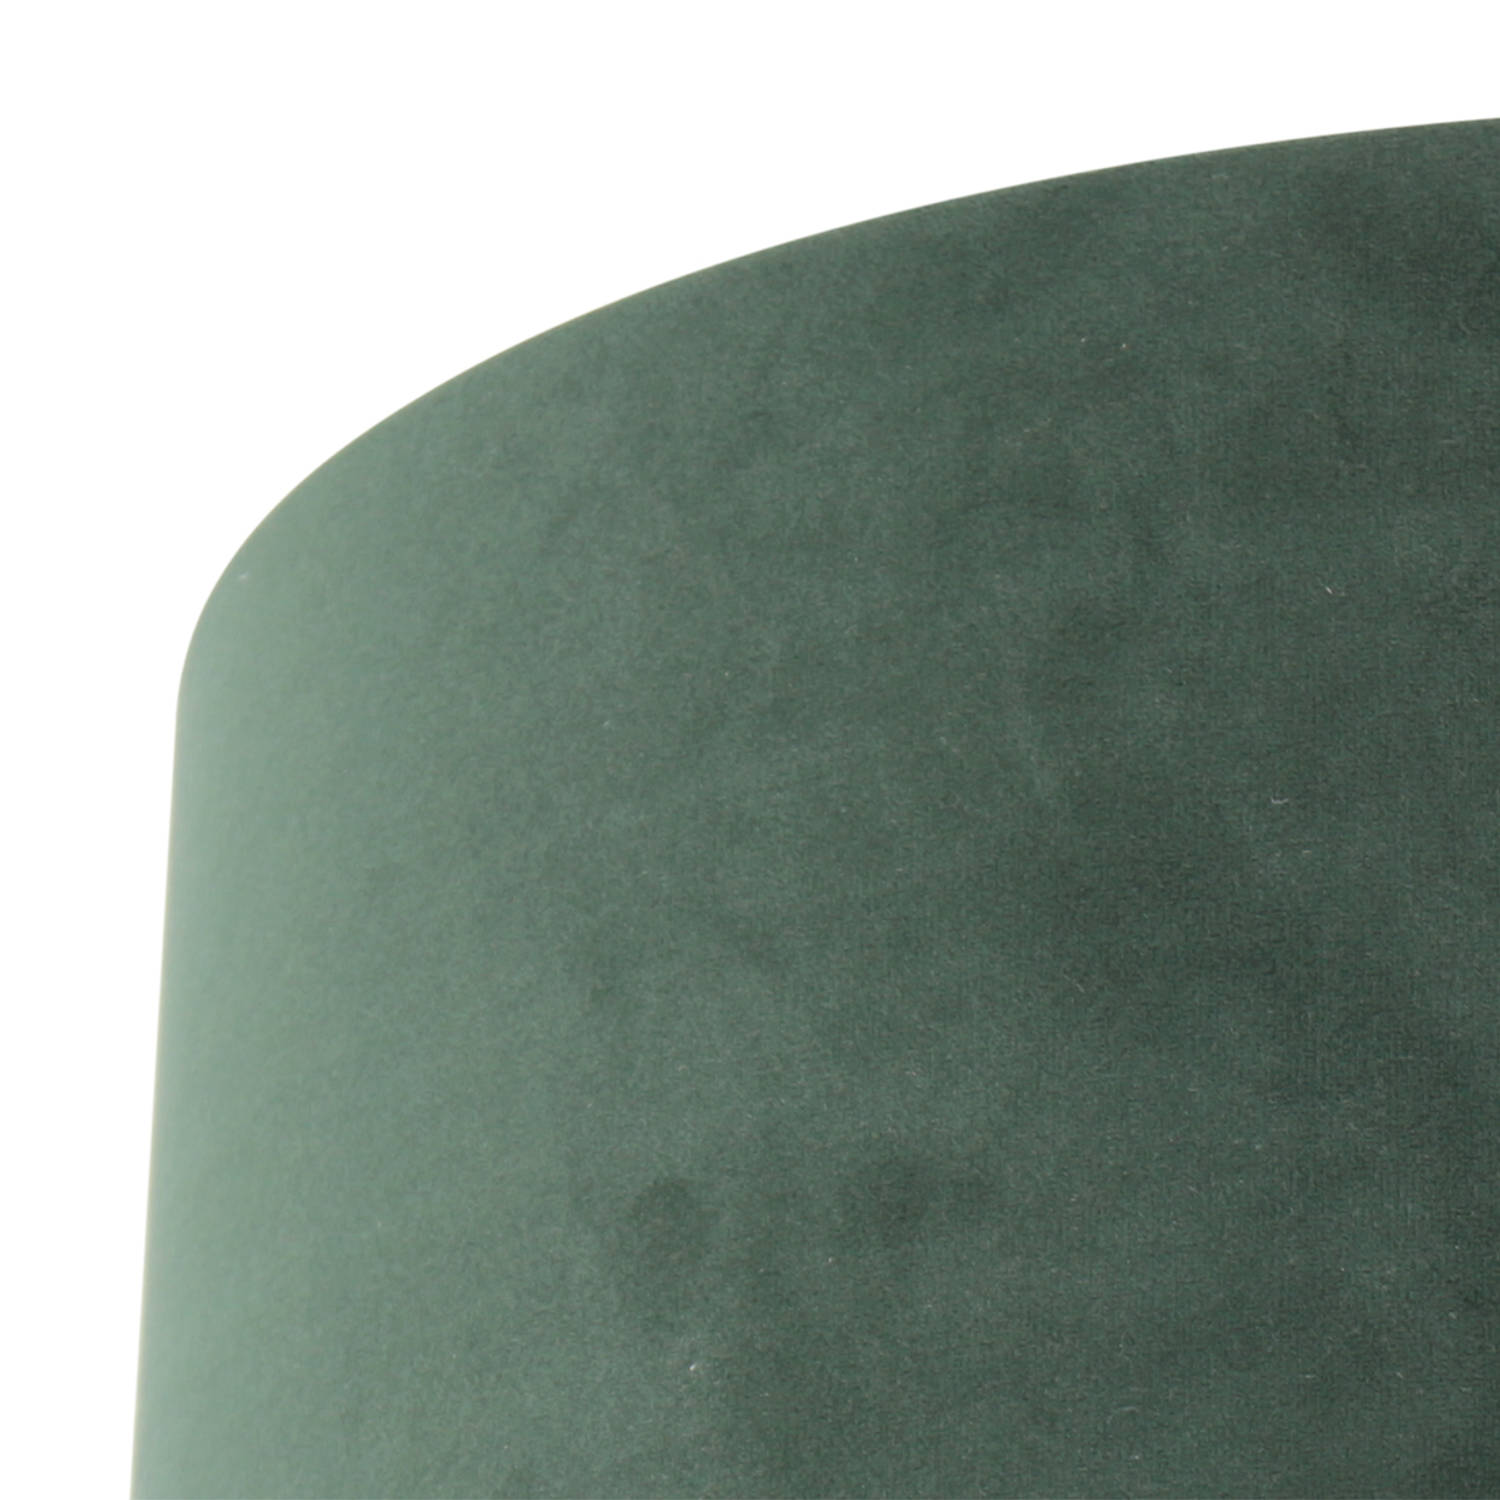 Beweren kreupel escaleren Steinhauer Prestige Chic lampenkap groen velours 20 cm hoog | Blokker